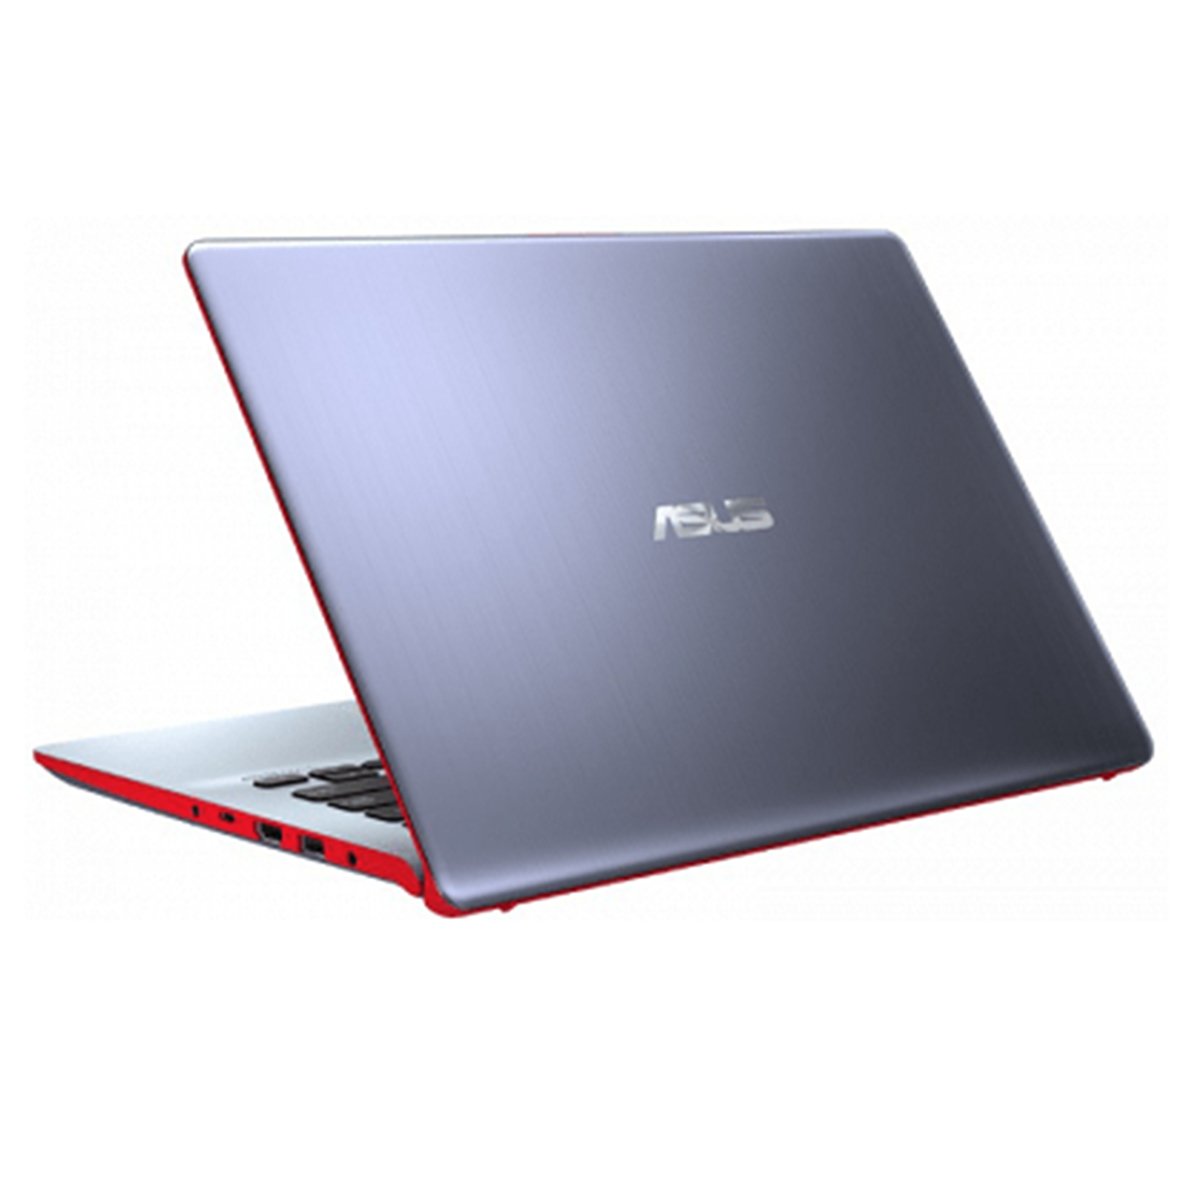 Asus VivoBook S430FN-EK164T Core i7 Red